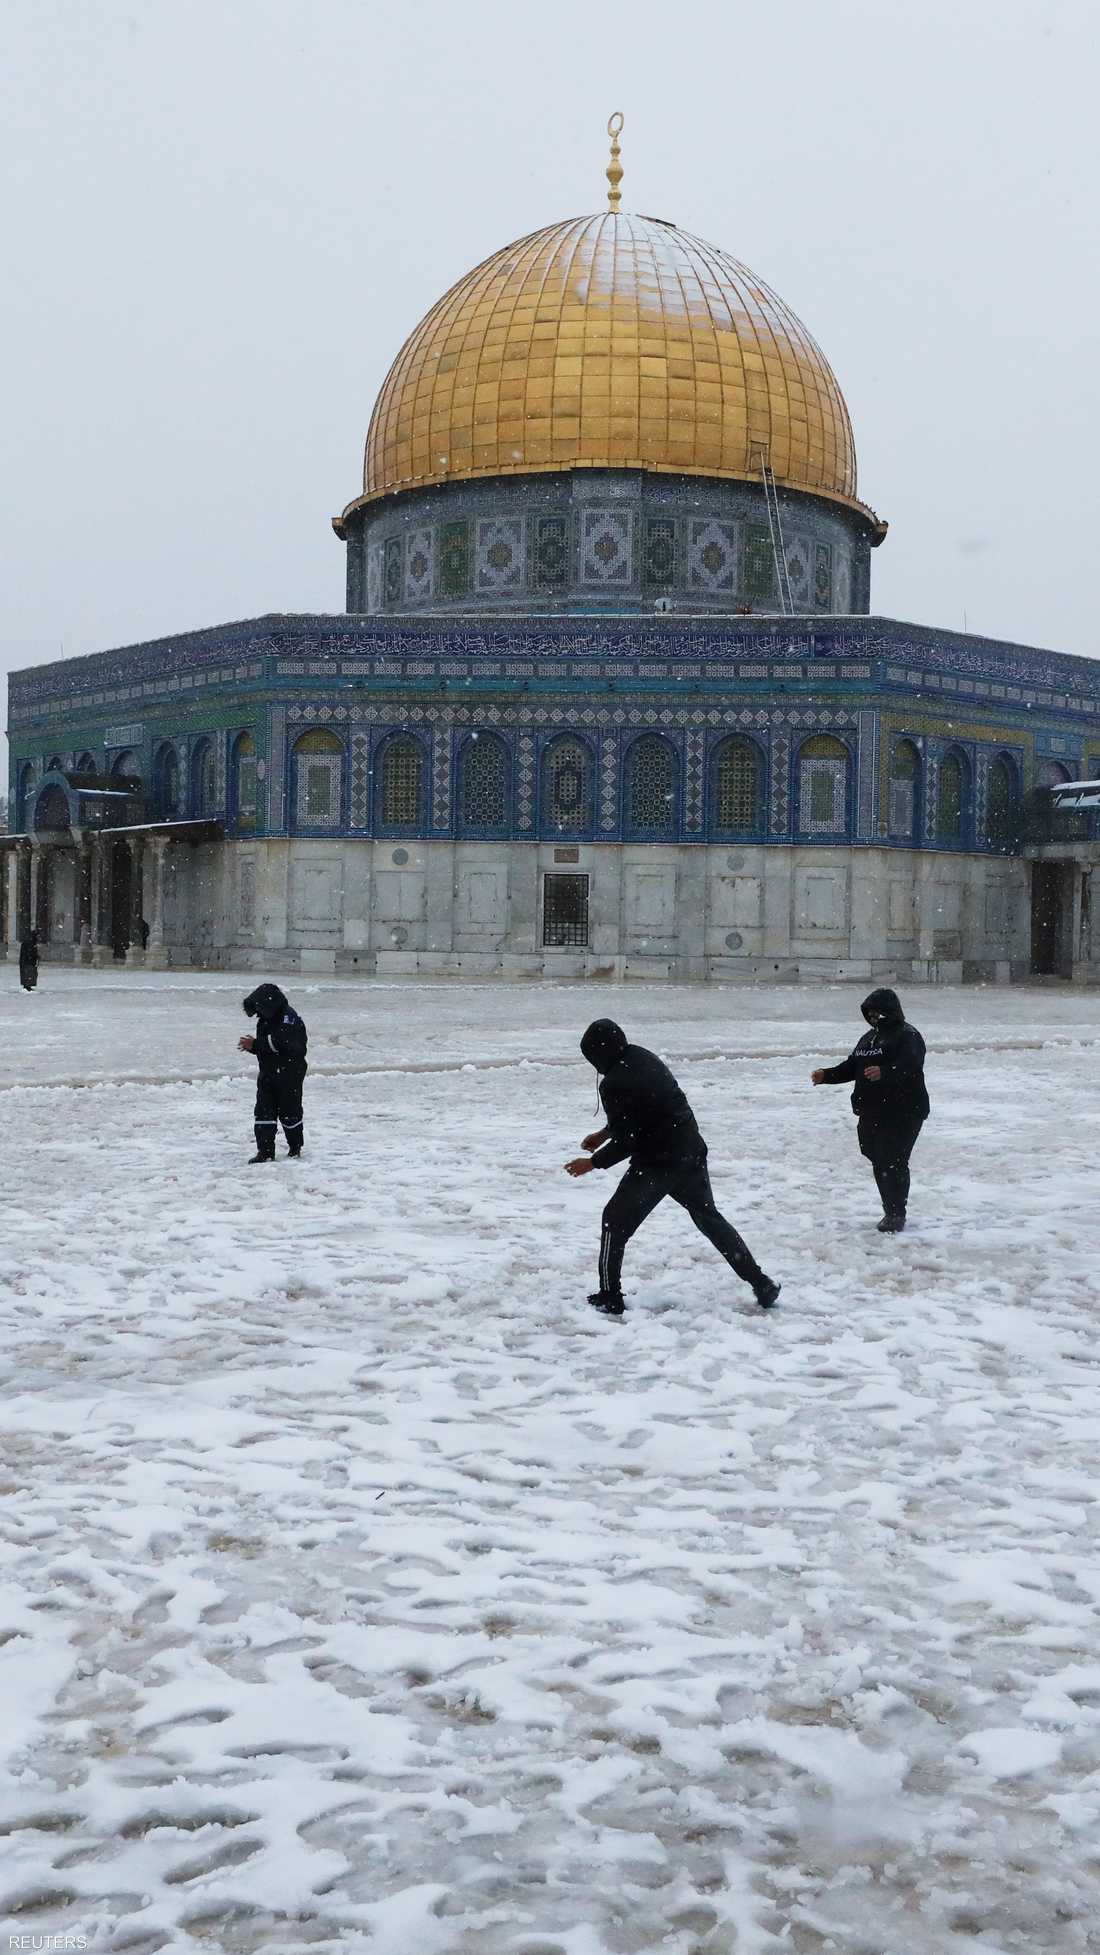 يلعب الناس بأكوام الثلج بجانب قبة الصخرة في القدس